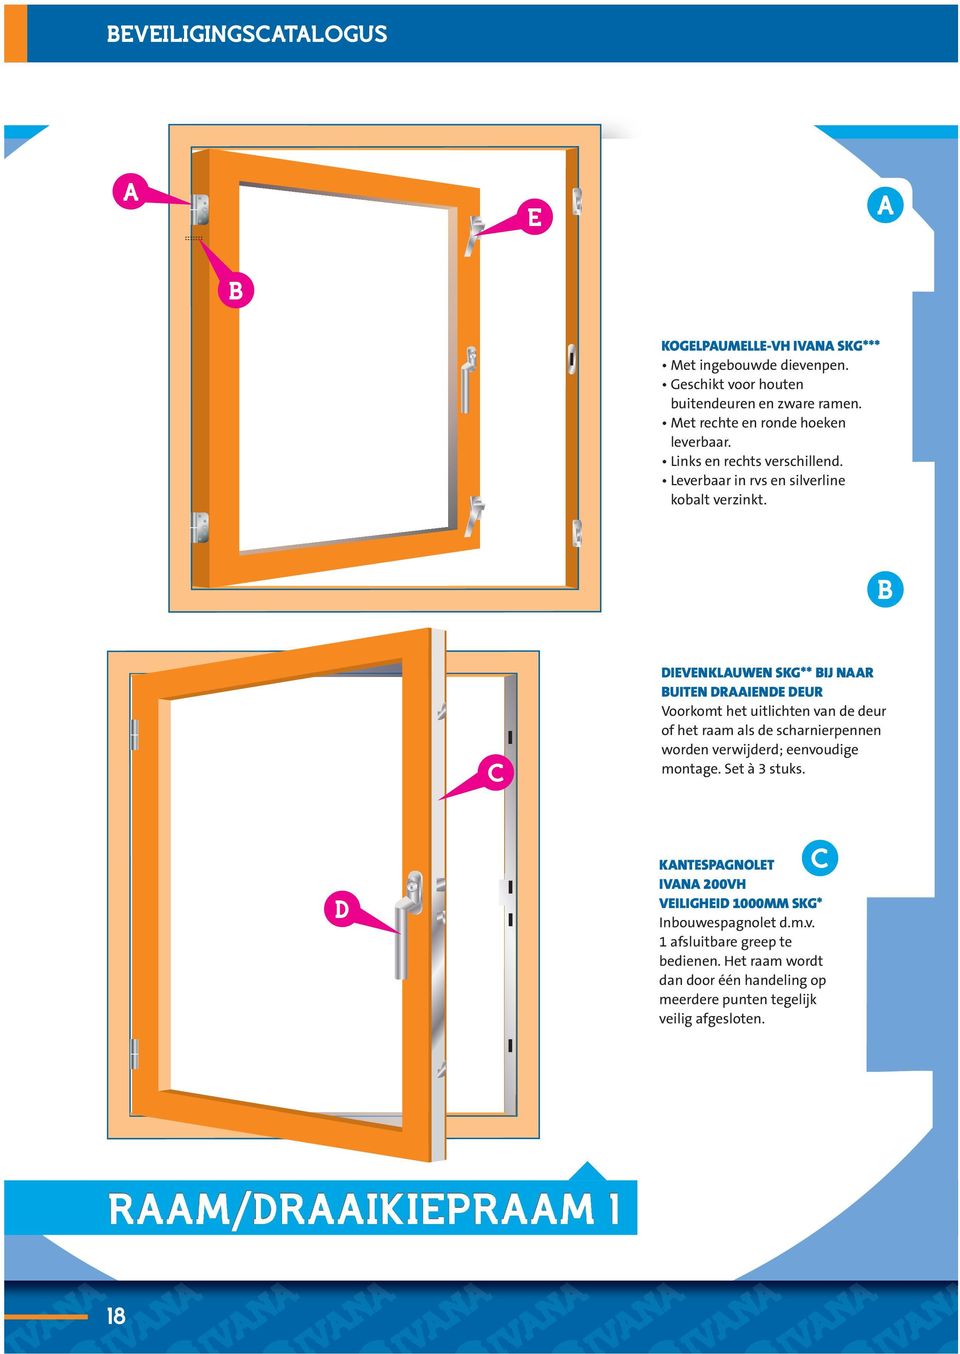 C IVNKLUWN SKG** IJ NR UITN RIN UR Voorkomt het uitlichten van de deur of het raam als de scharnierpennen worden verwijderd; eenvoudige montage. Set à 3 stuks.